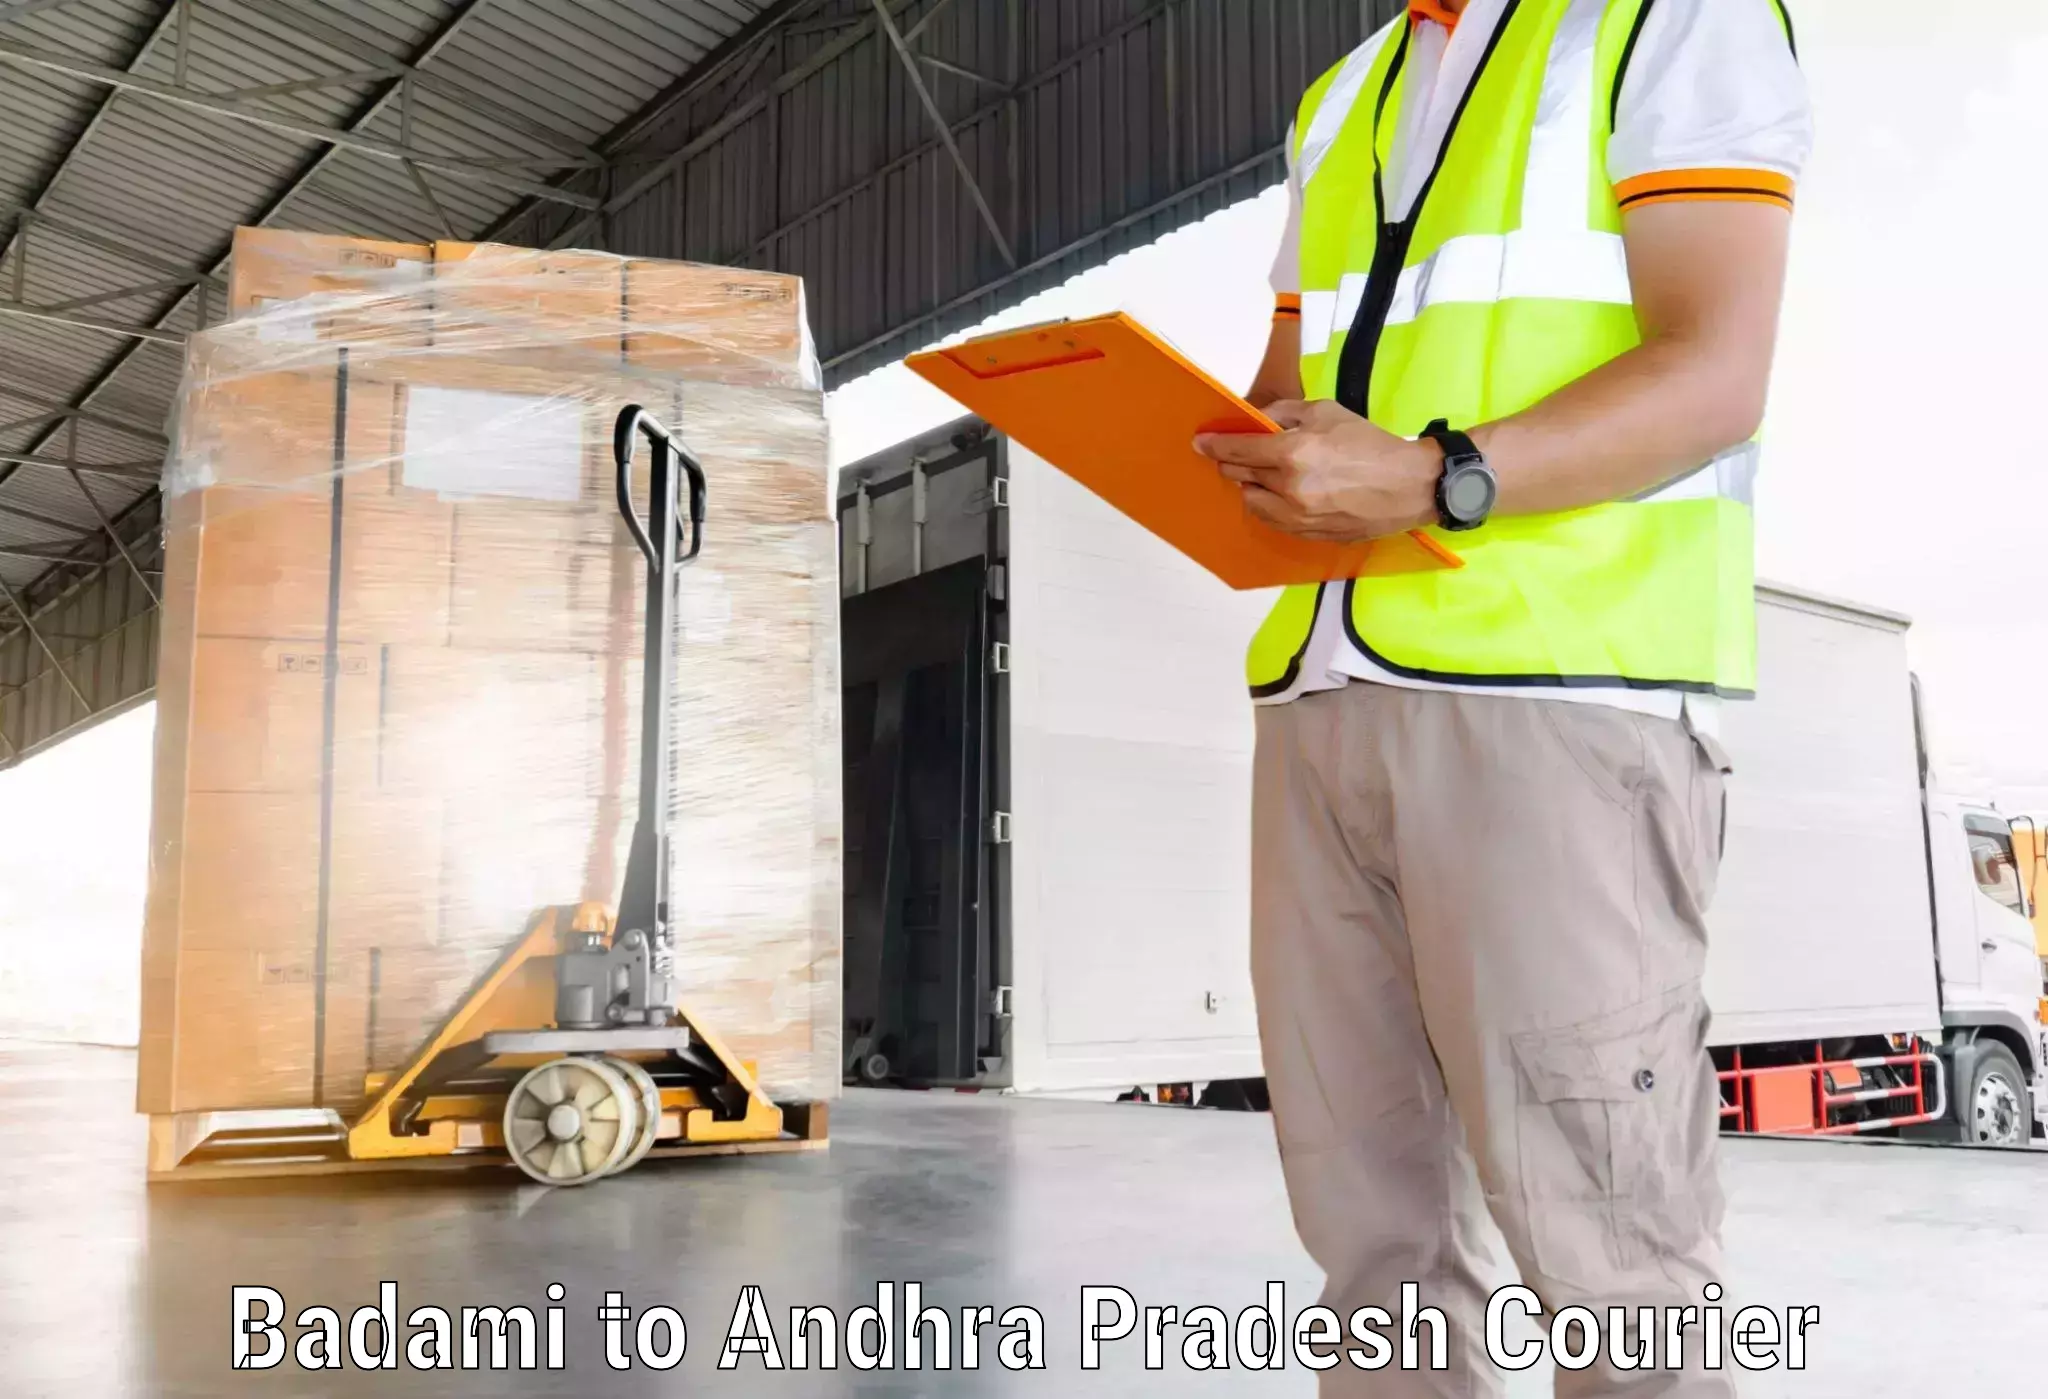 Cargo delivery service Badami to Rajahmundry